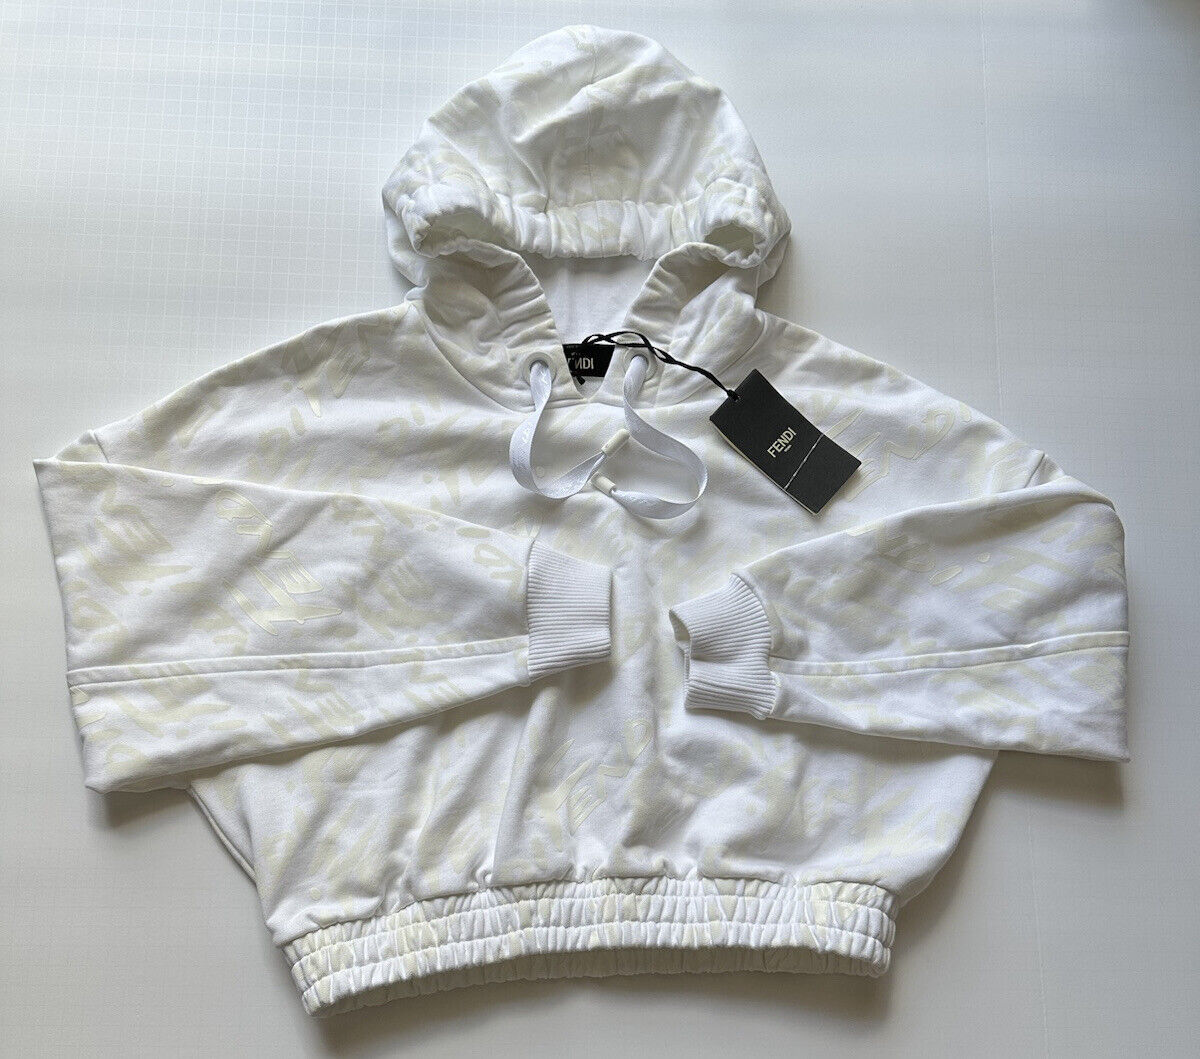 NWT 1100 долларов США Fendi Женская молочно-белая вязаная куртка Fendi с капюшоном 6 США (42 ЕС) IT 